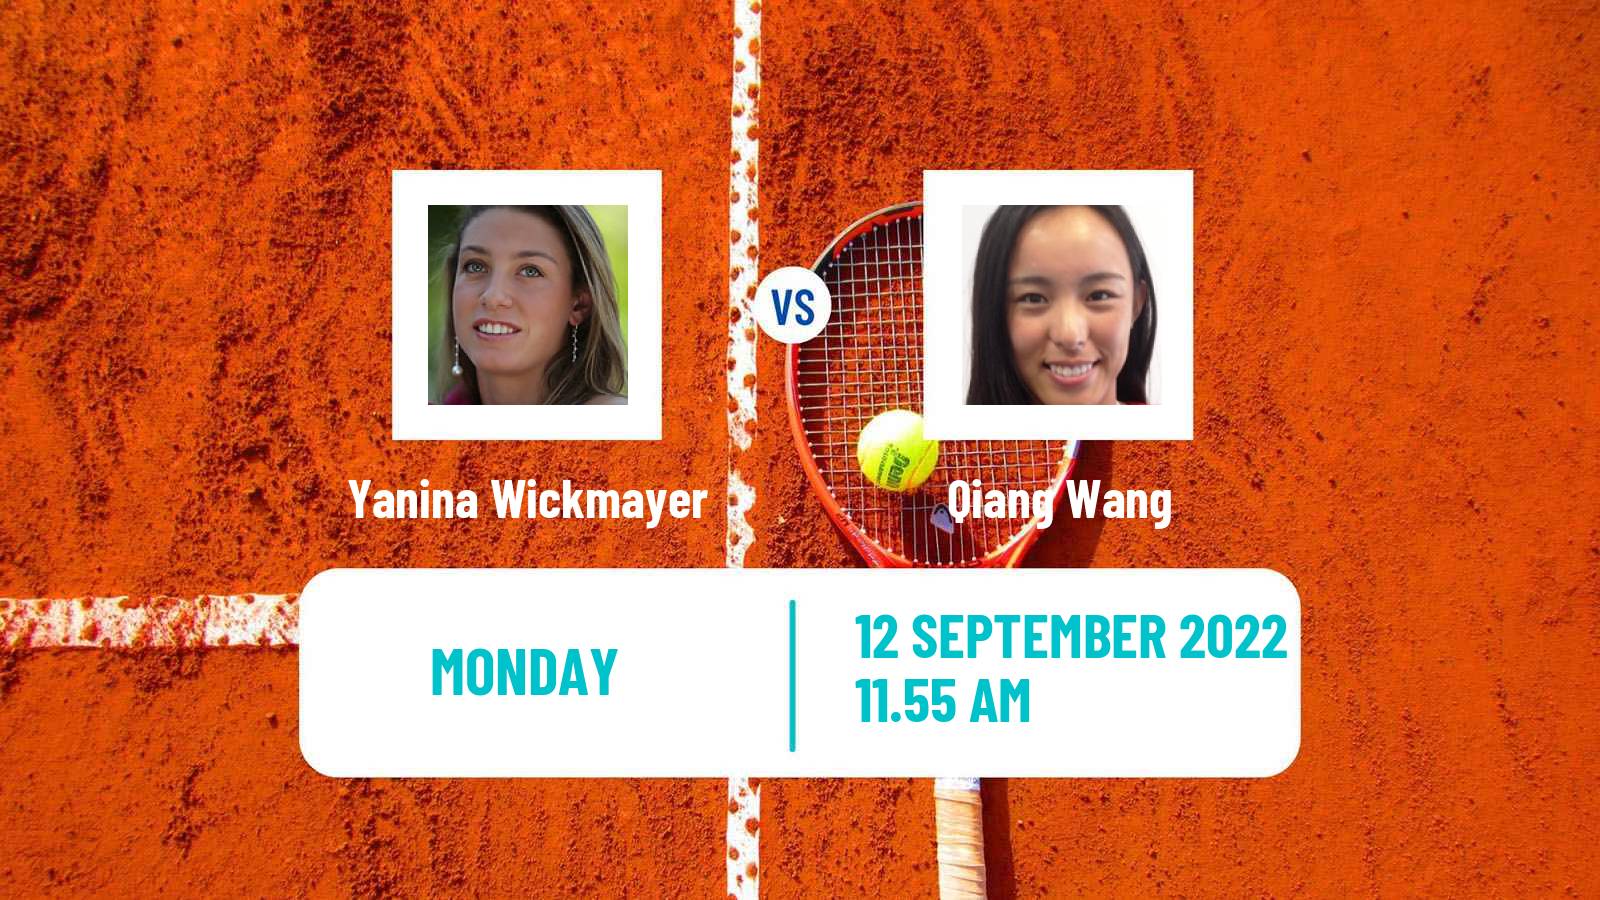 Tennis WTA Chennai Yanina Wickmayer - Qiang Wang